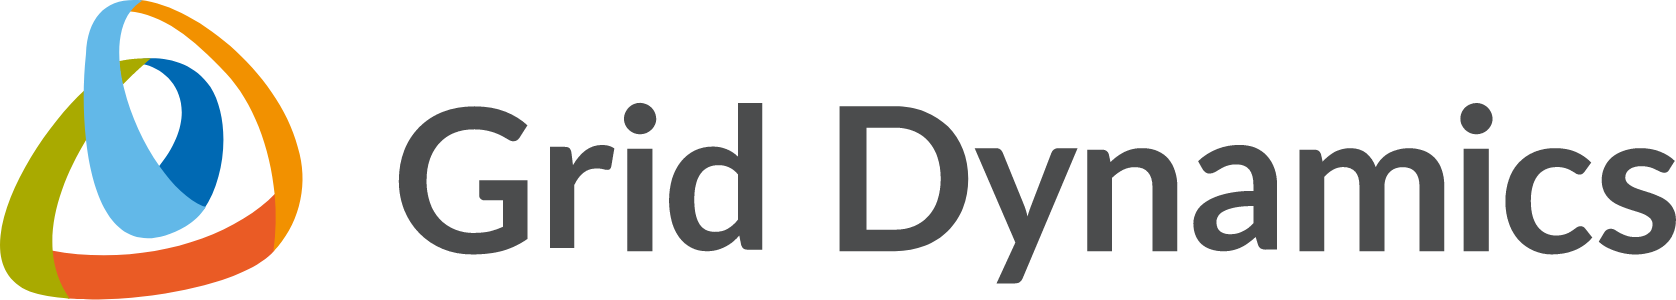 Logotipo da Grid Dynamics